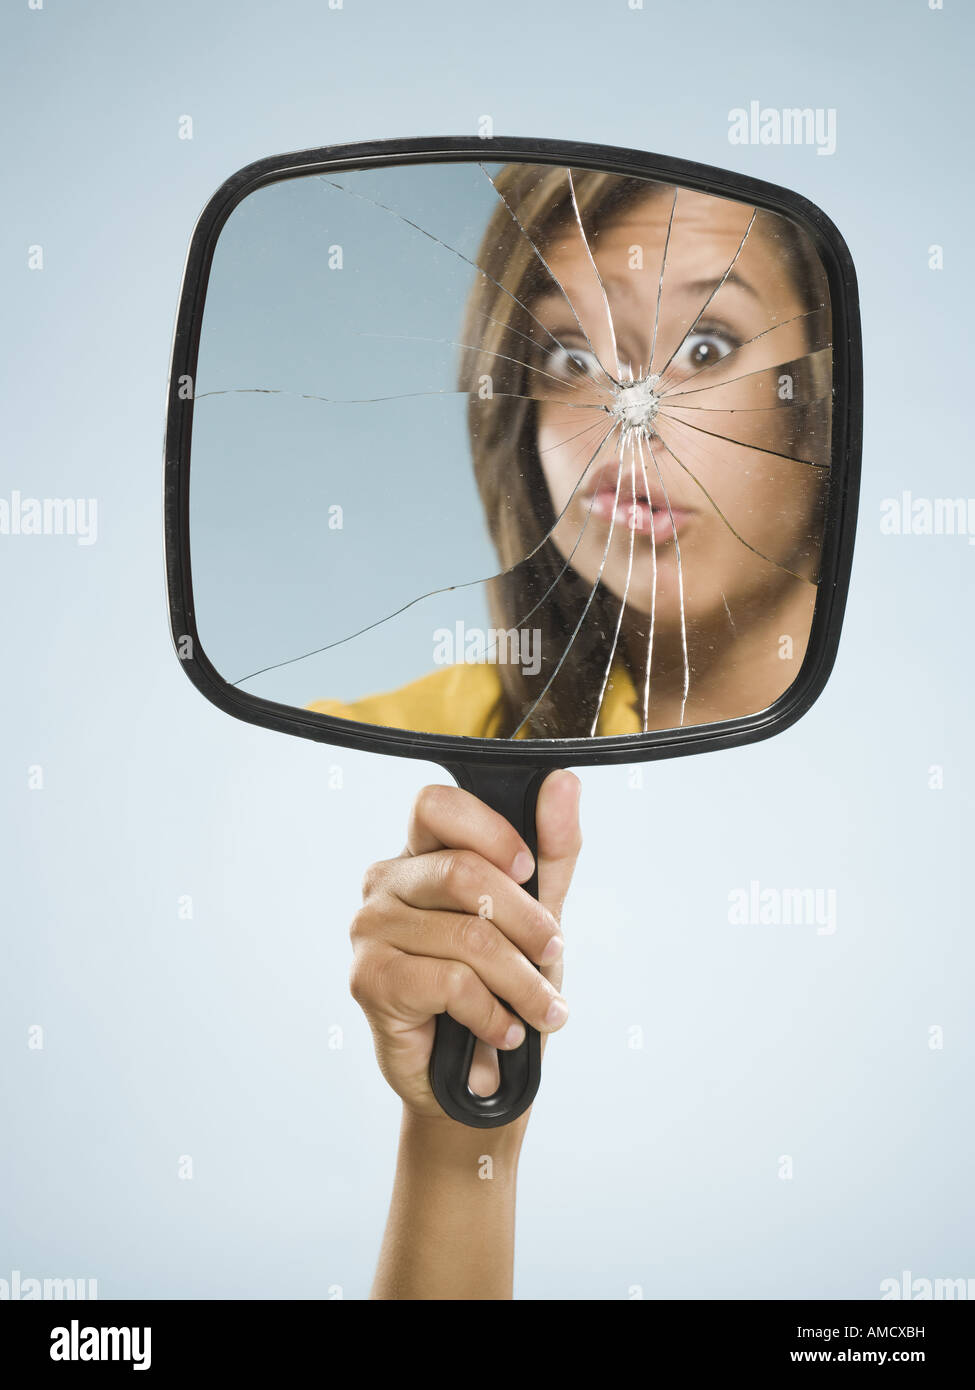 Reflet de femme en miroir brisé Banque D'Images